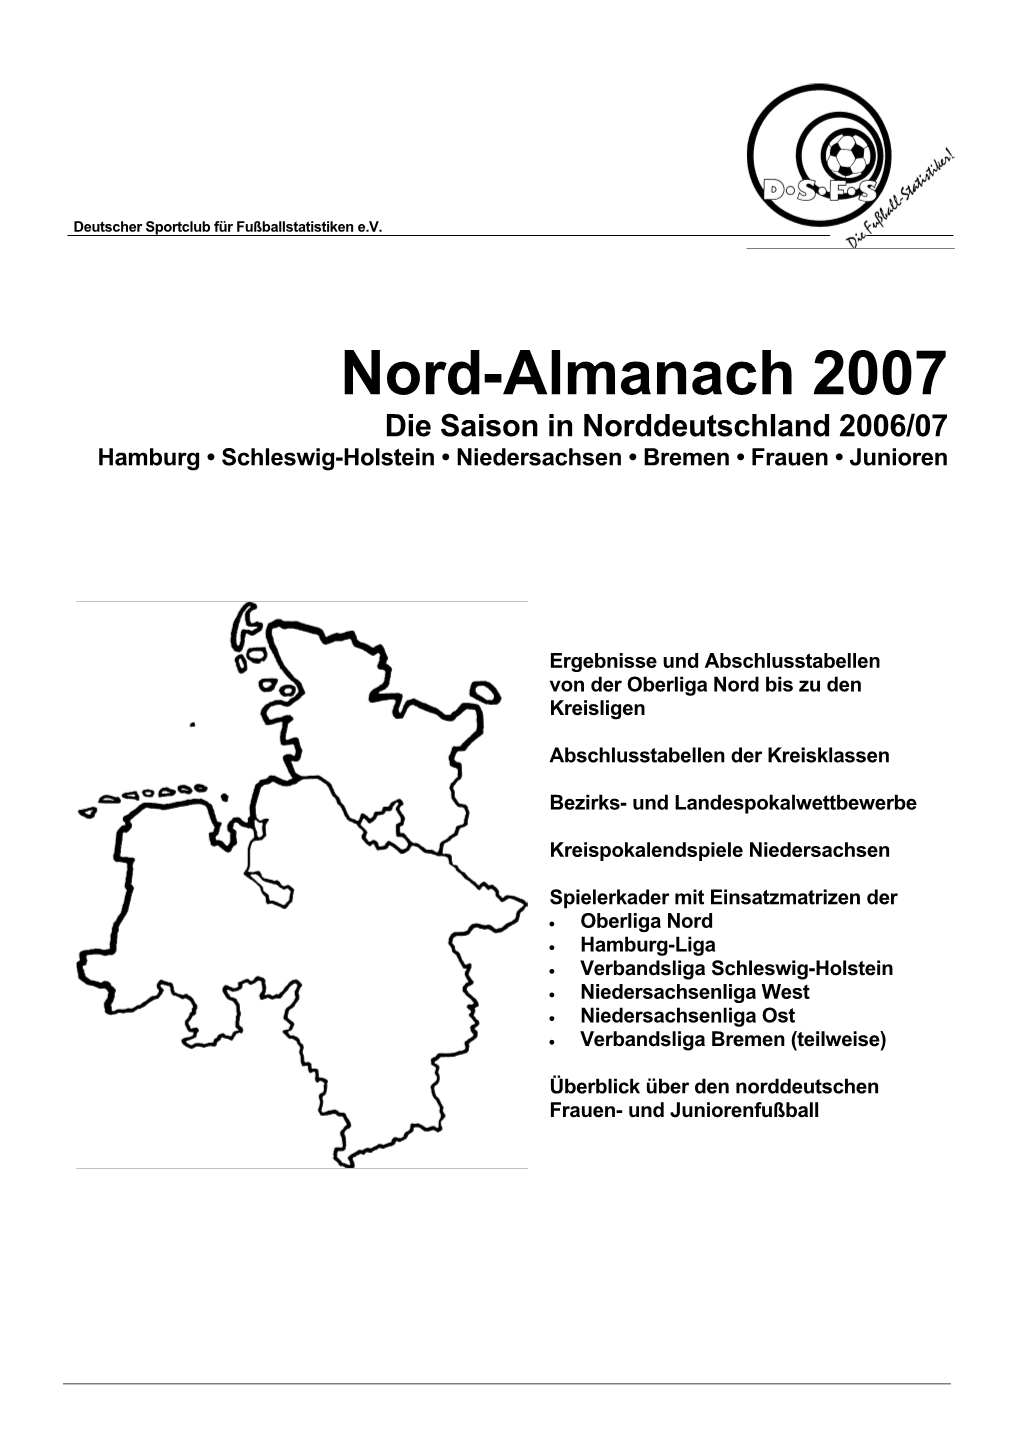 Nord-Almanach 2007 Die Saison in Norddeutschland 2006/07 Hamburg • Schleswig-Holstein • Niedersachsen • Bremen • Frauen • Junioren